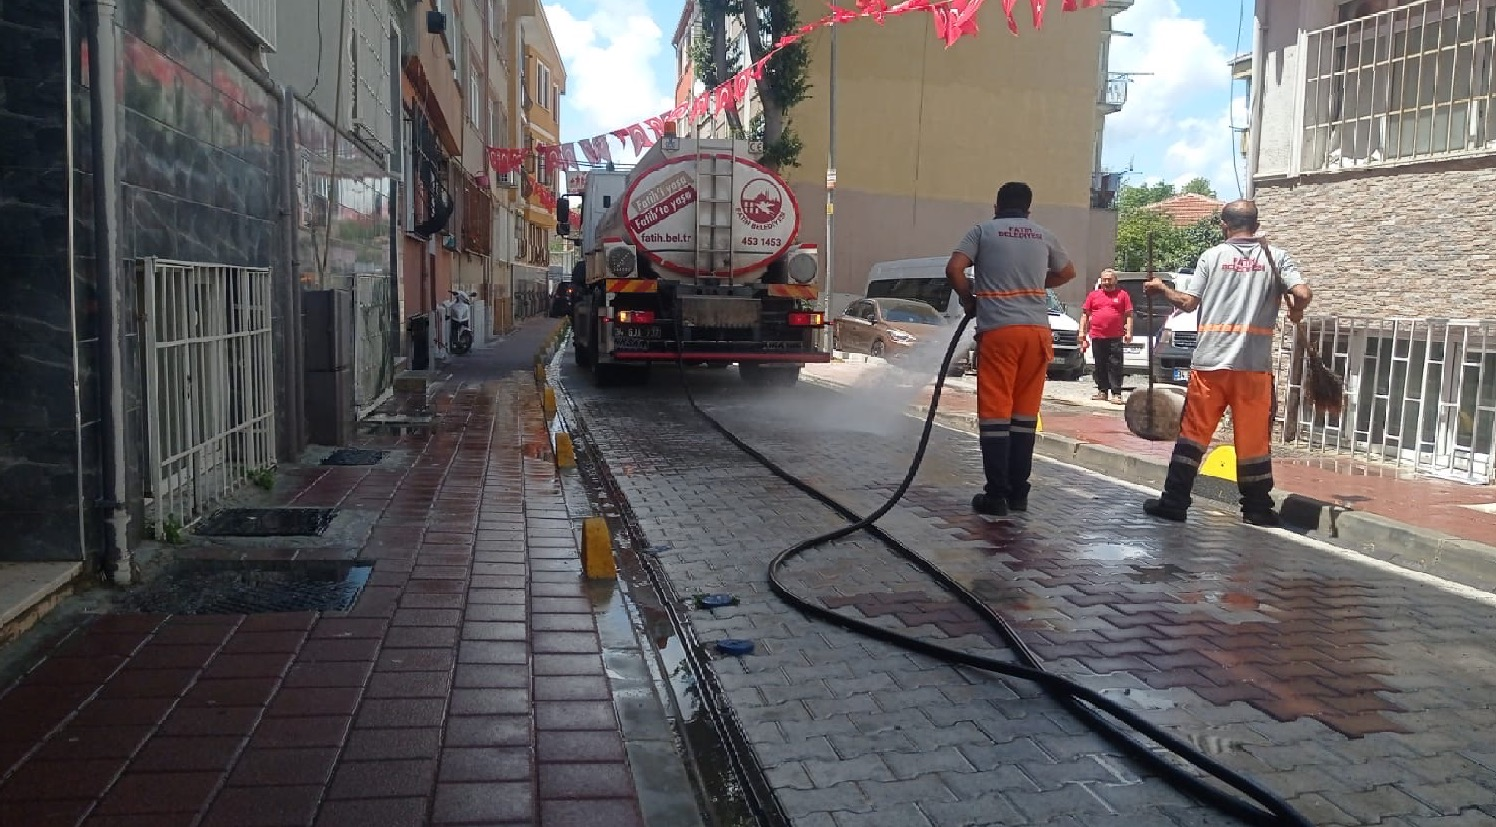 Fatih Belediyesi Çevre Koruma ve Kontrol Müdürlüğü Cadde ve Sokak Temizlik Hizmetlerini Sürdürüyor